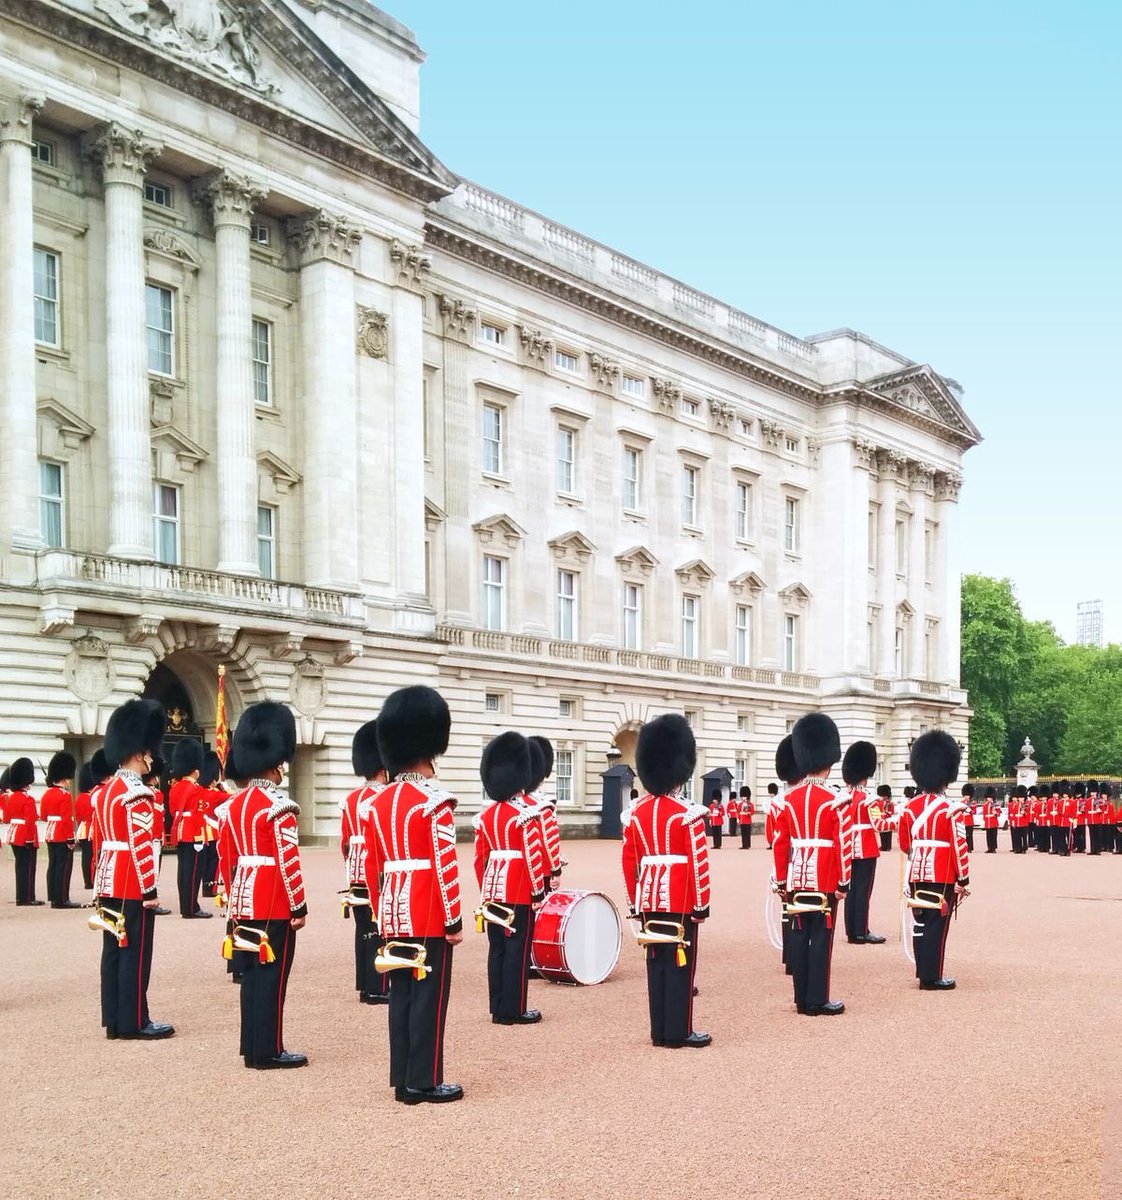 Buckingham Palace, London - UK 🇬🇧 
#London #UK #RoyalFamily #Buckingham #RoyalGuards